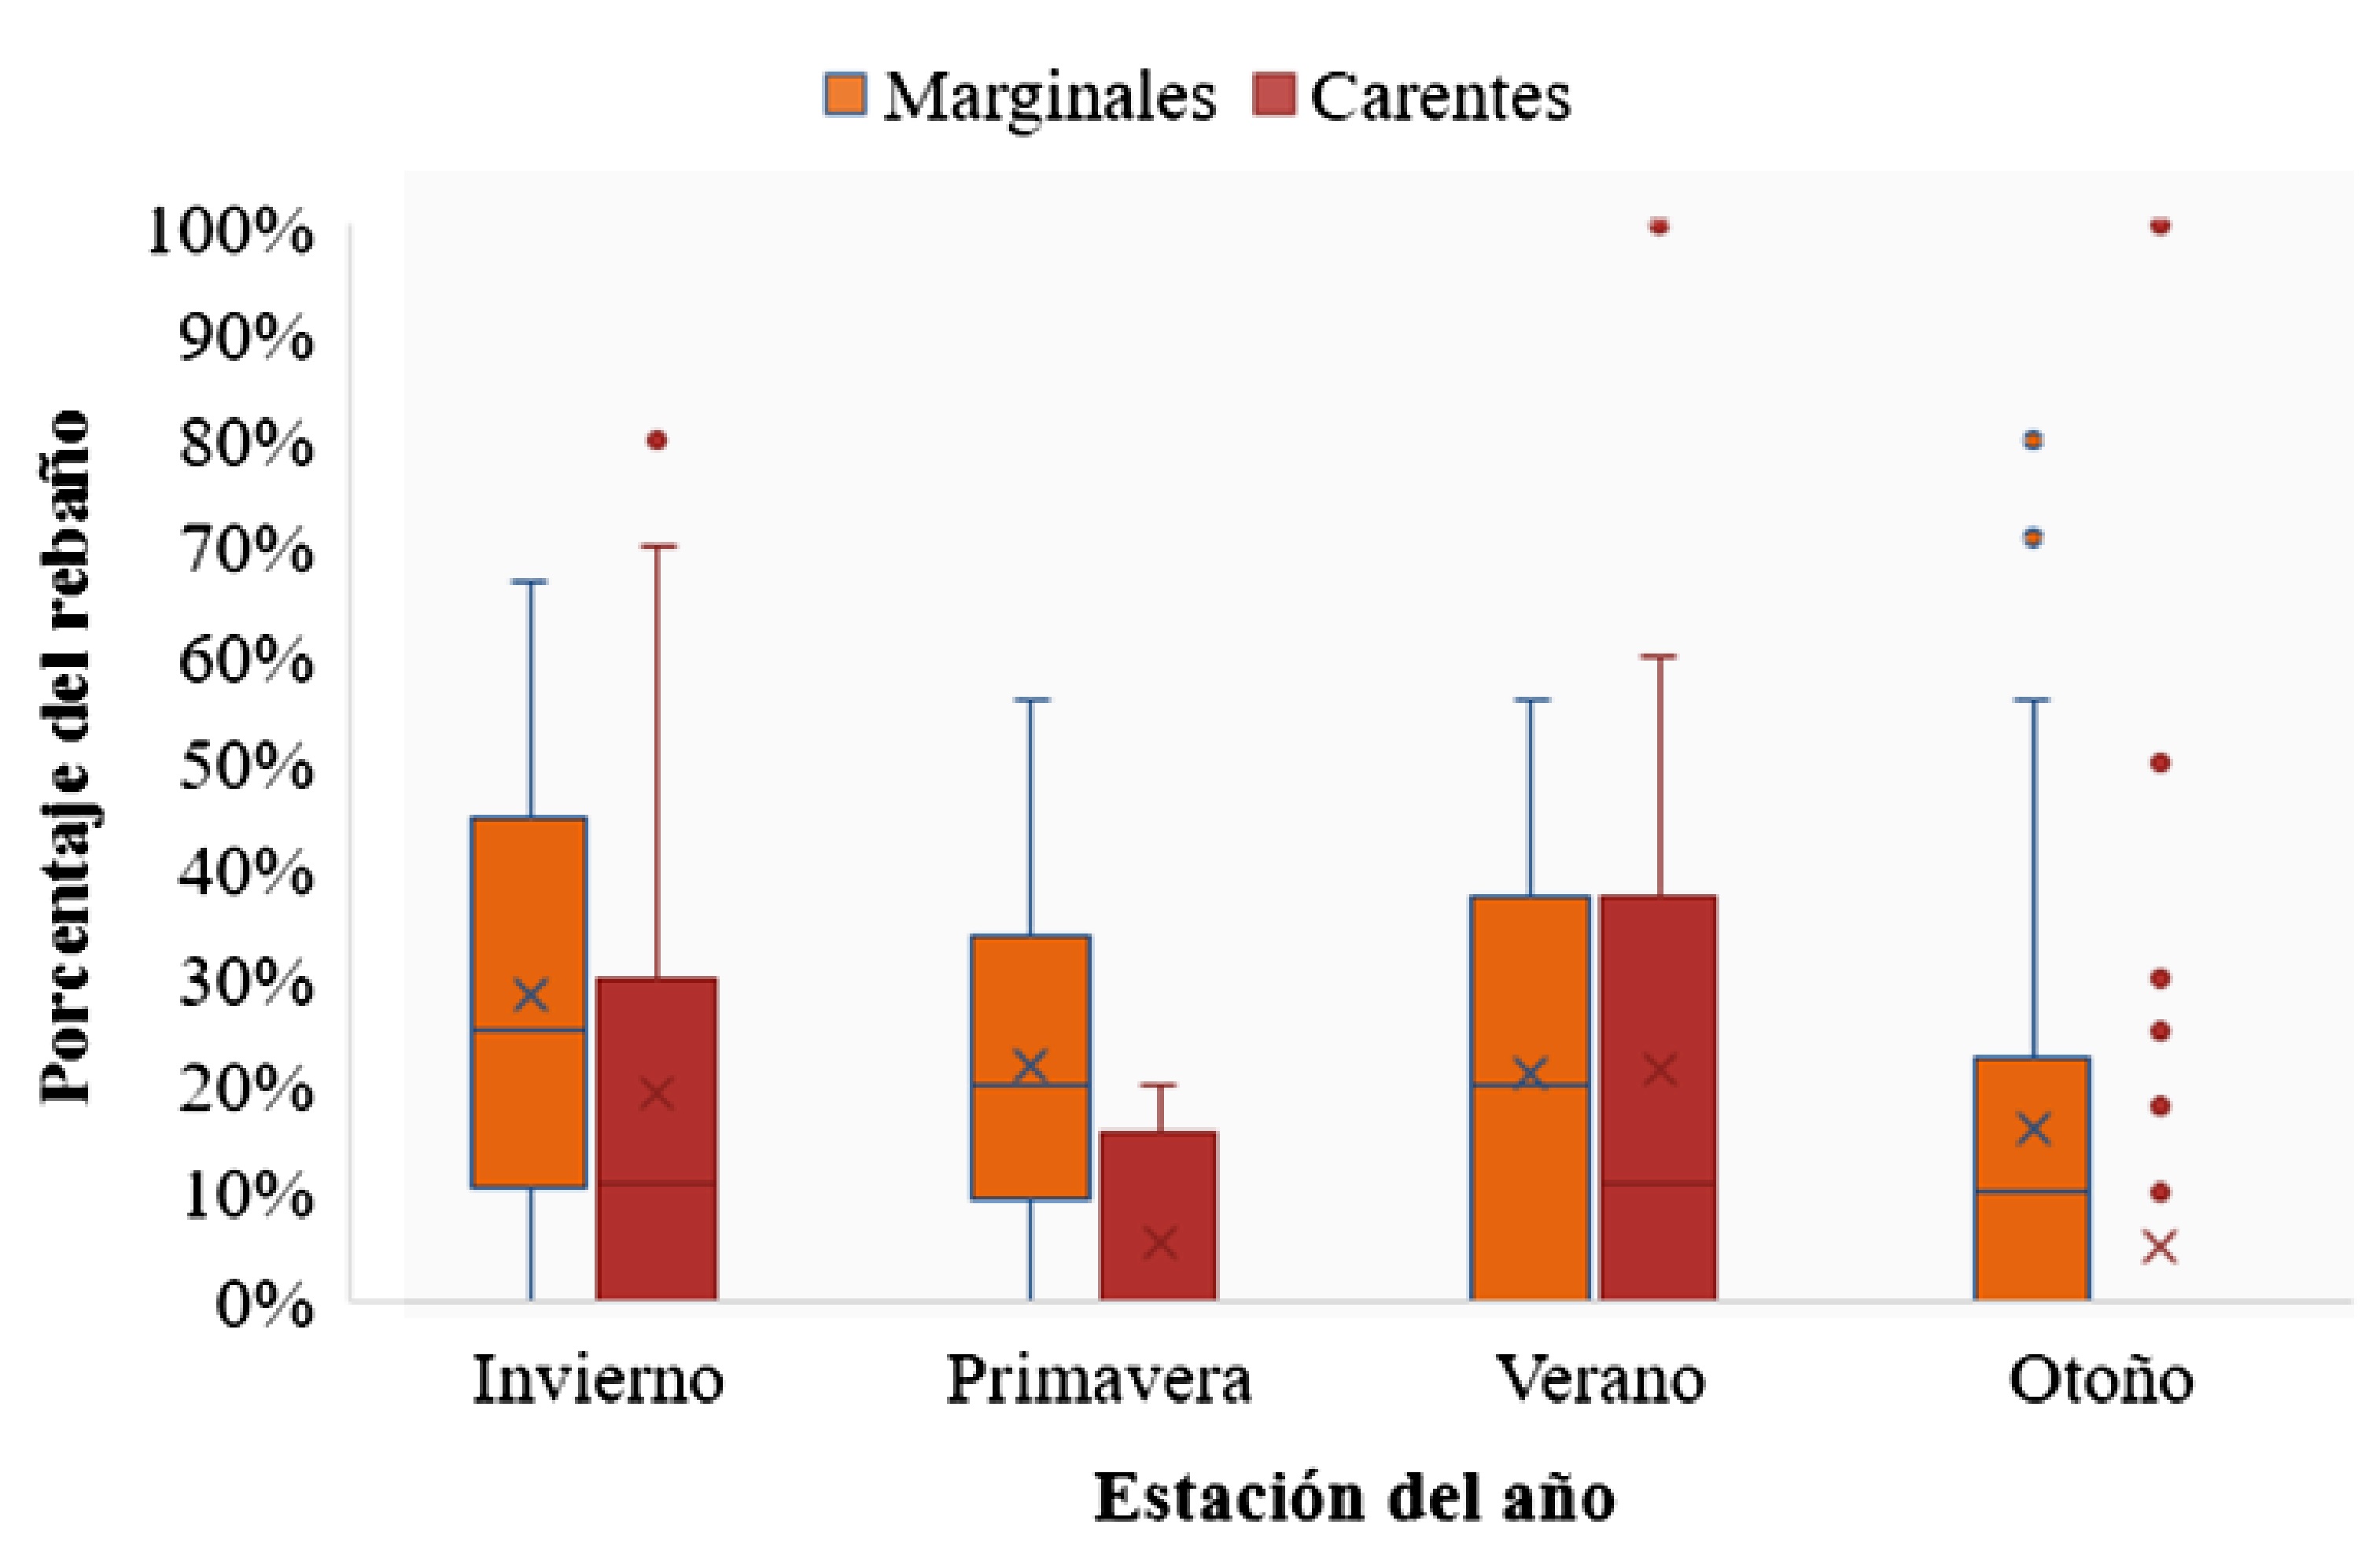 Porcentaje de vacas del
  rebaño con valores plasmáticos de Zn marginales (80 a 89 µg/dl) o carentes
  (<80 µg/dl) por estación del año, en la cuenca deprimida del río Salado
  (Buenos Aires, Argentina).